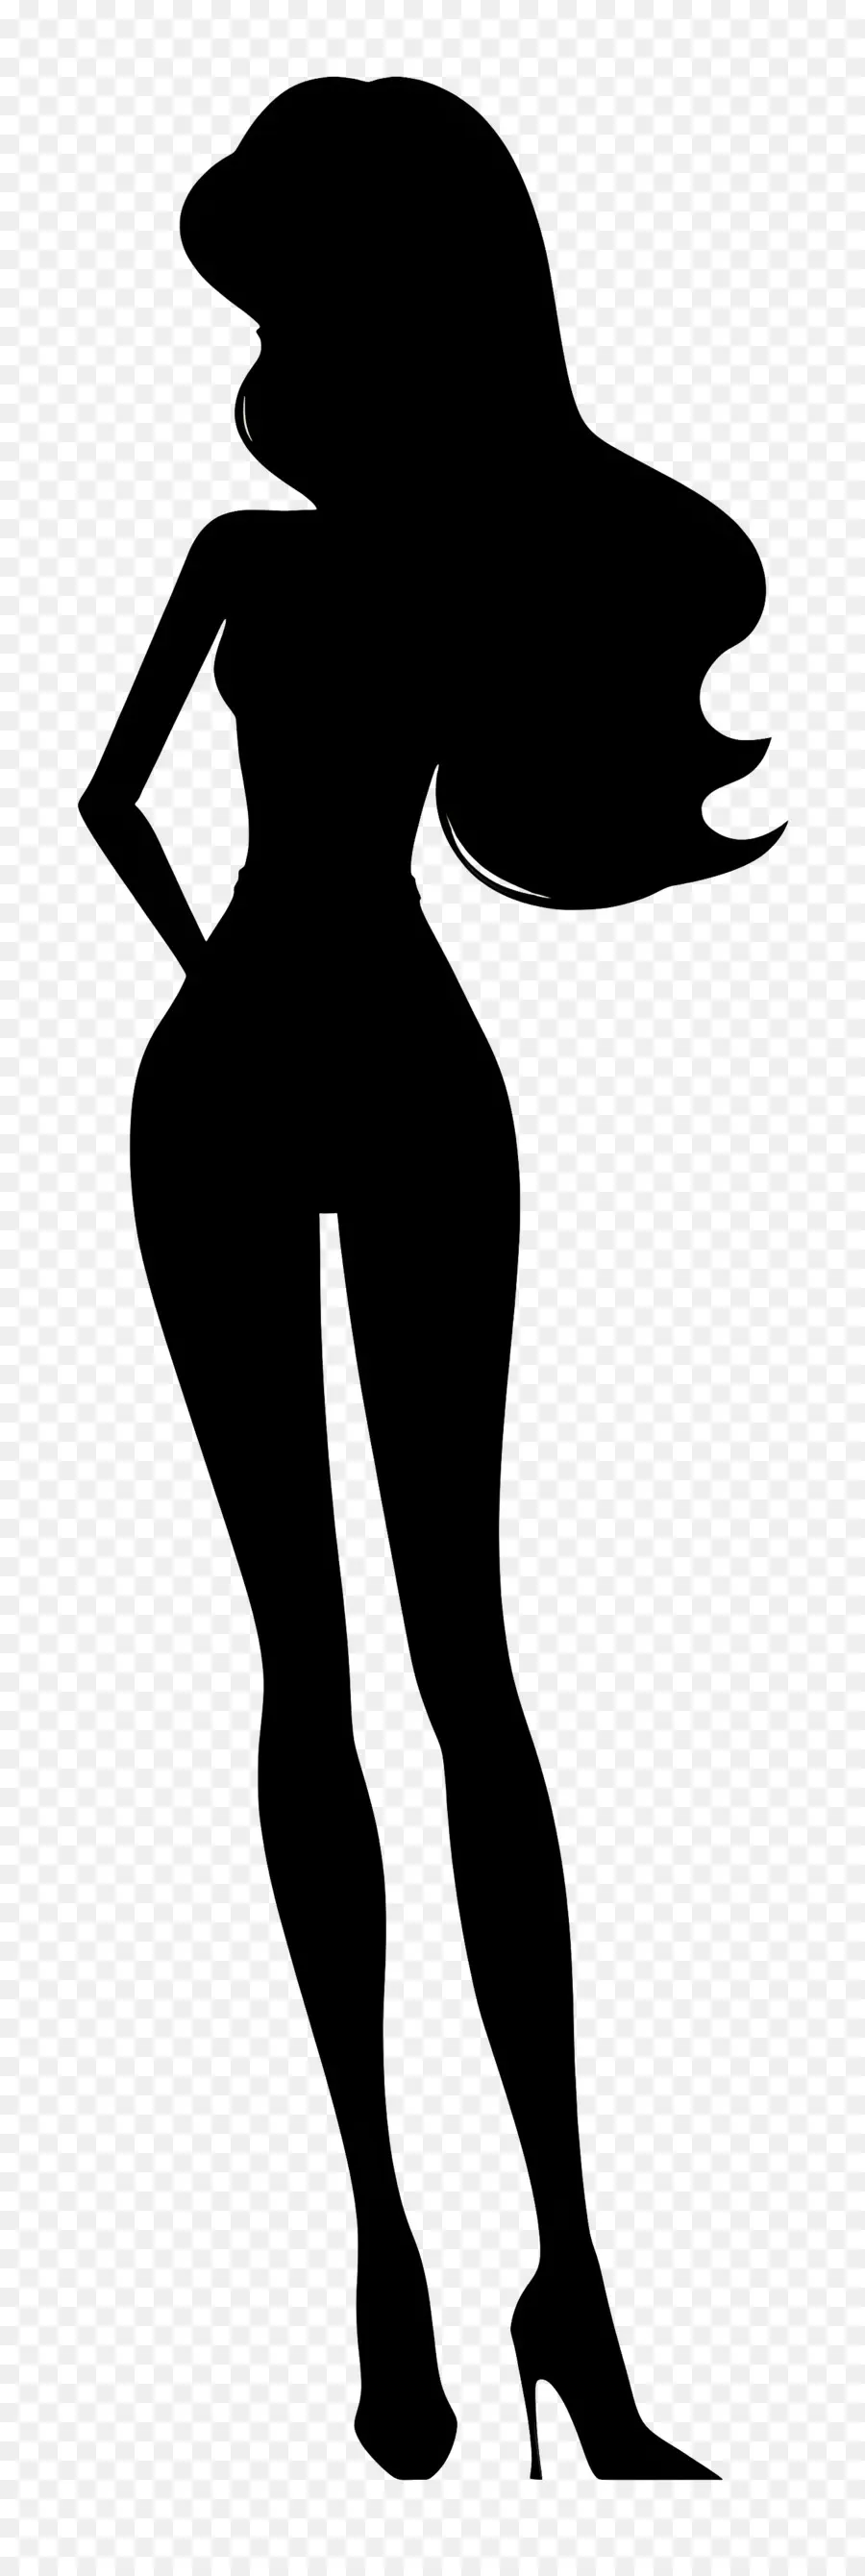 Người phụ nữ hình bóng Barbie Silhouette đã vươn ra dài và thon thả - Người phụ nữ cao, thanh lịch với tư thế cánh tay dang rộng